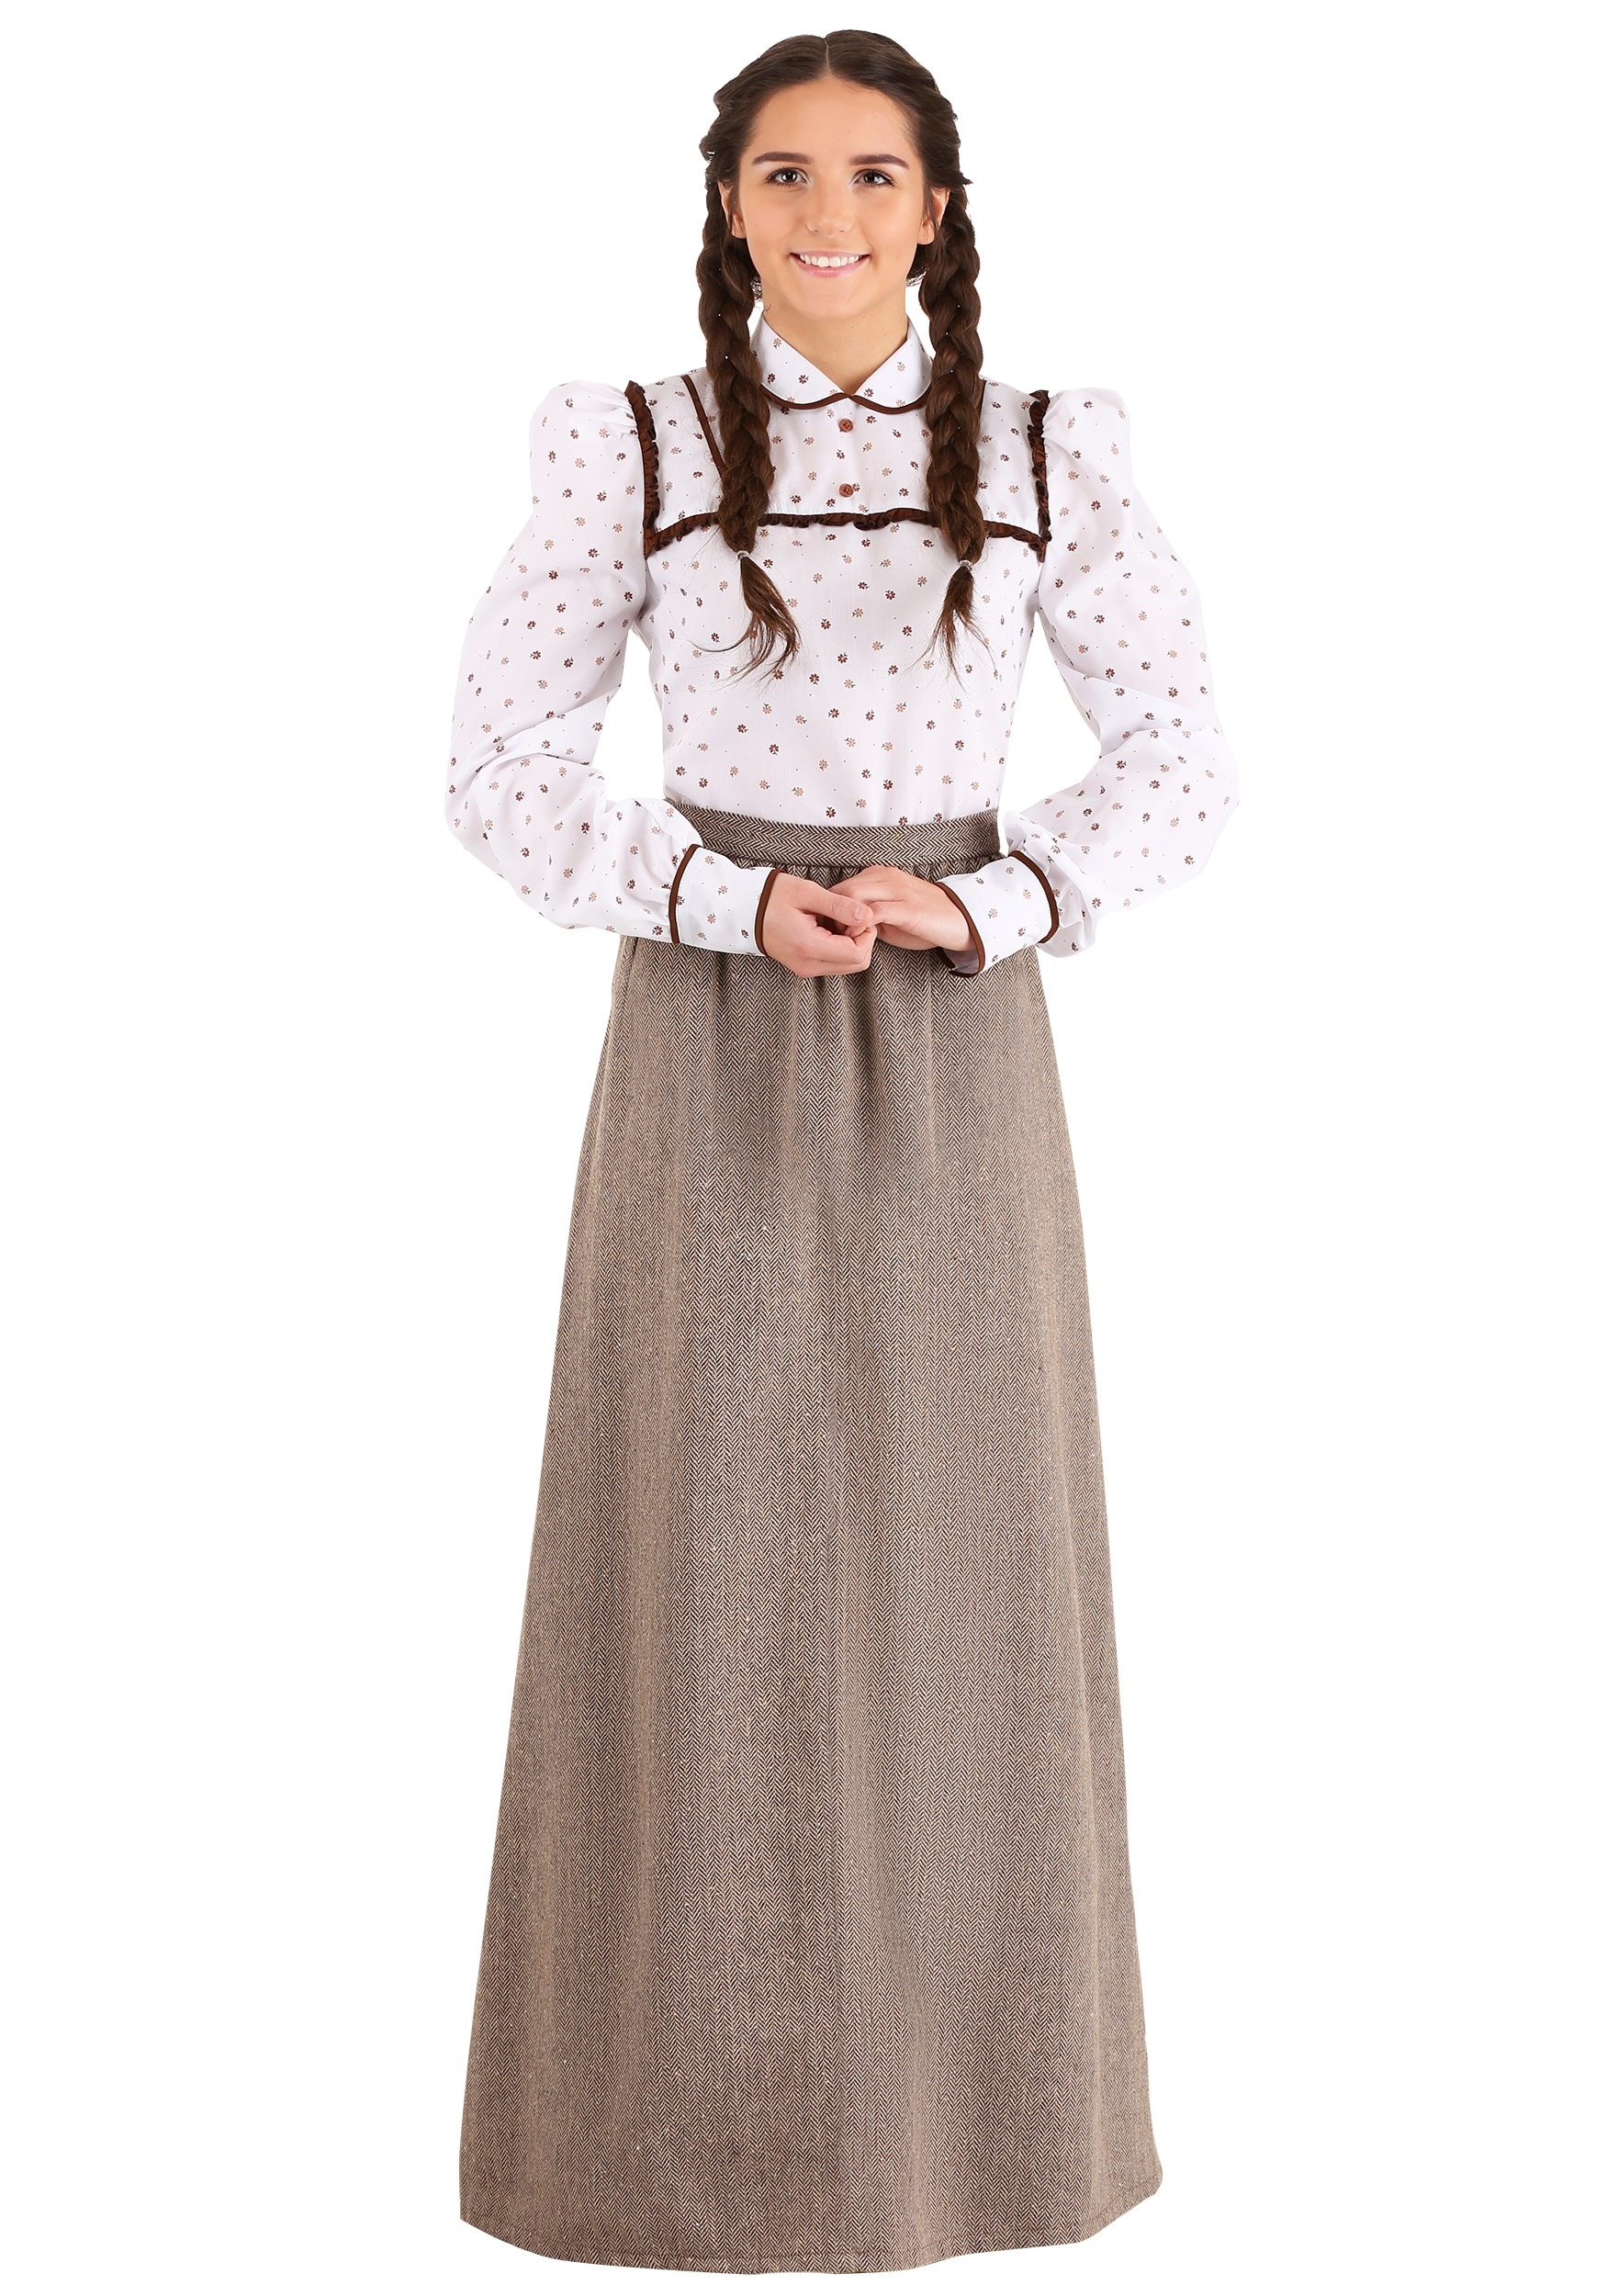 Westward Pioneer Women's Fancy Dress Costume